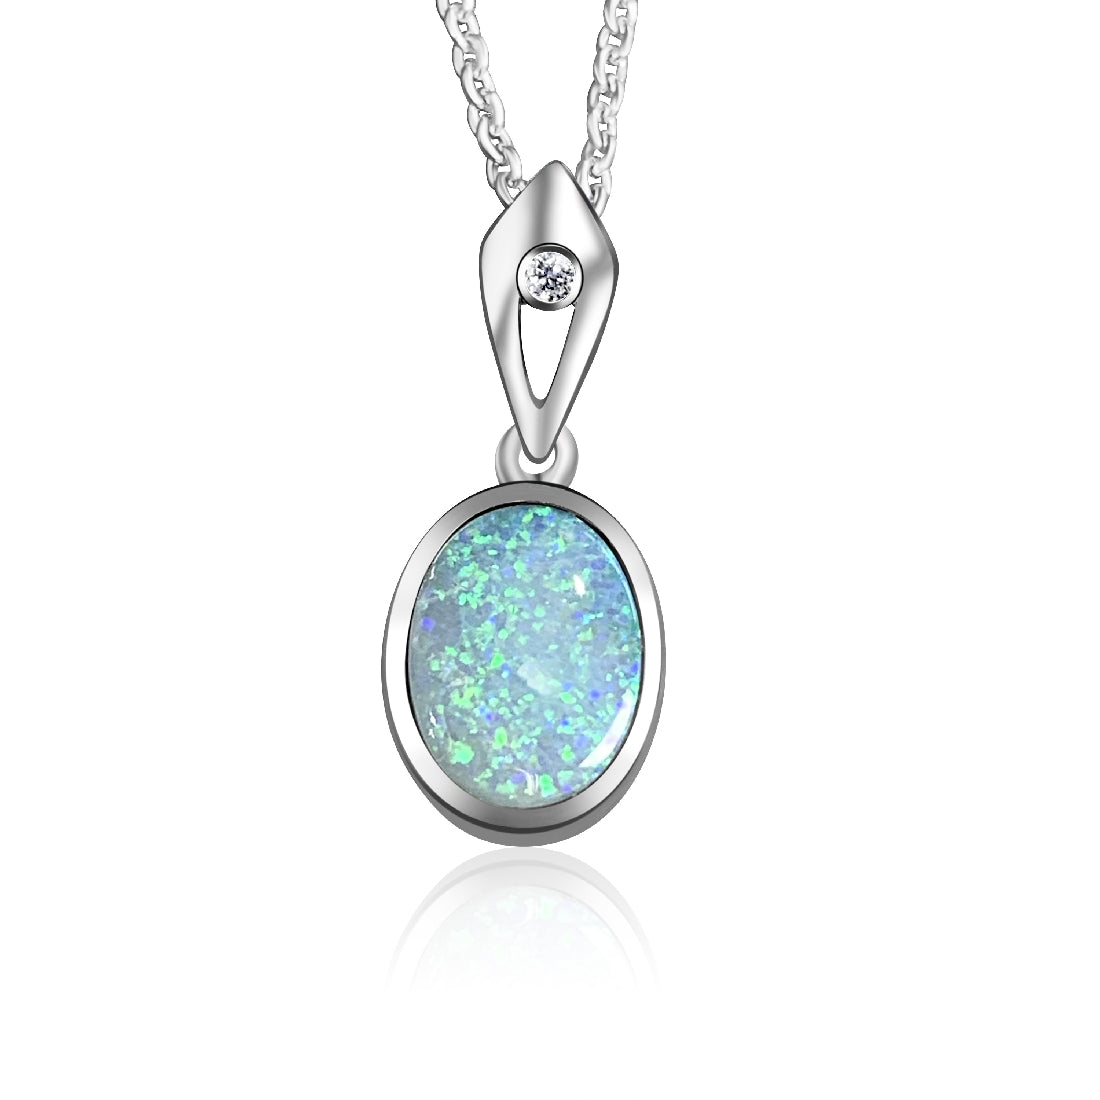 Sterling Silver 8x6mm Opal doublet pendant - Masterpiece Jewellery Opal & Gems Sydney Australia | Online Shop